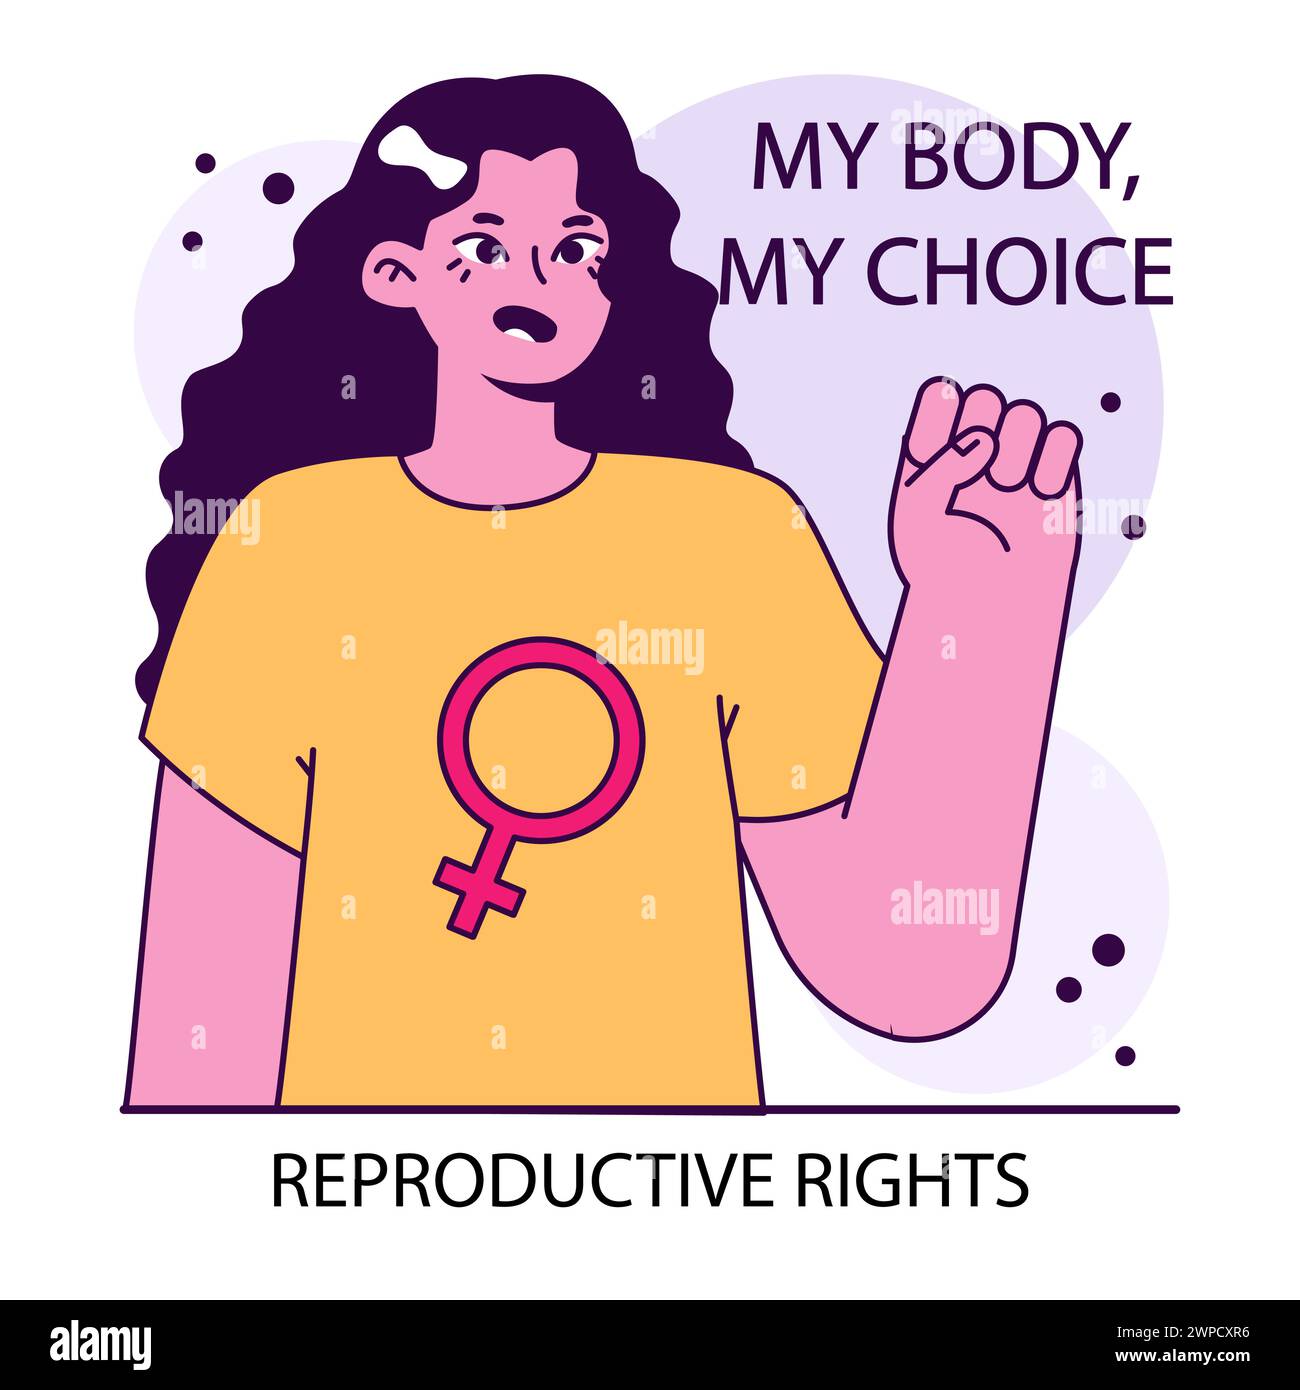 Derechos reproductivos. Mujer resuelta empoderada anuncia la importancia de los derechos reproductivos expresando Mi Cuerpo, Mi Elección. Autonomía corporal. Ilustración vectorial plana. Ilustración del Vector